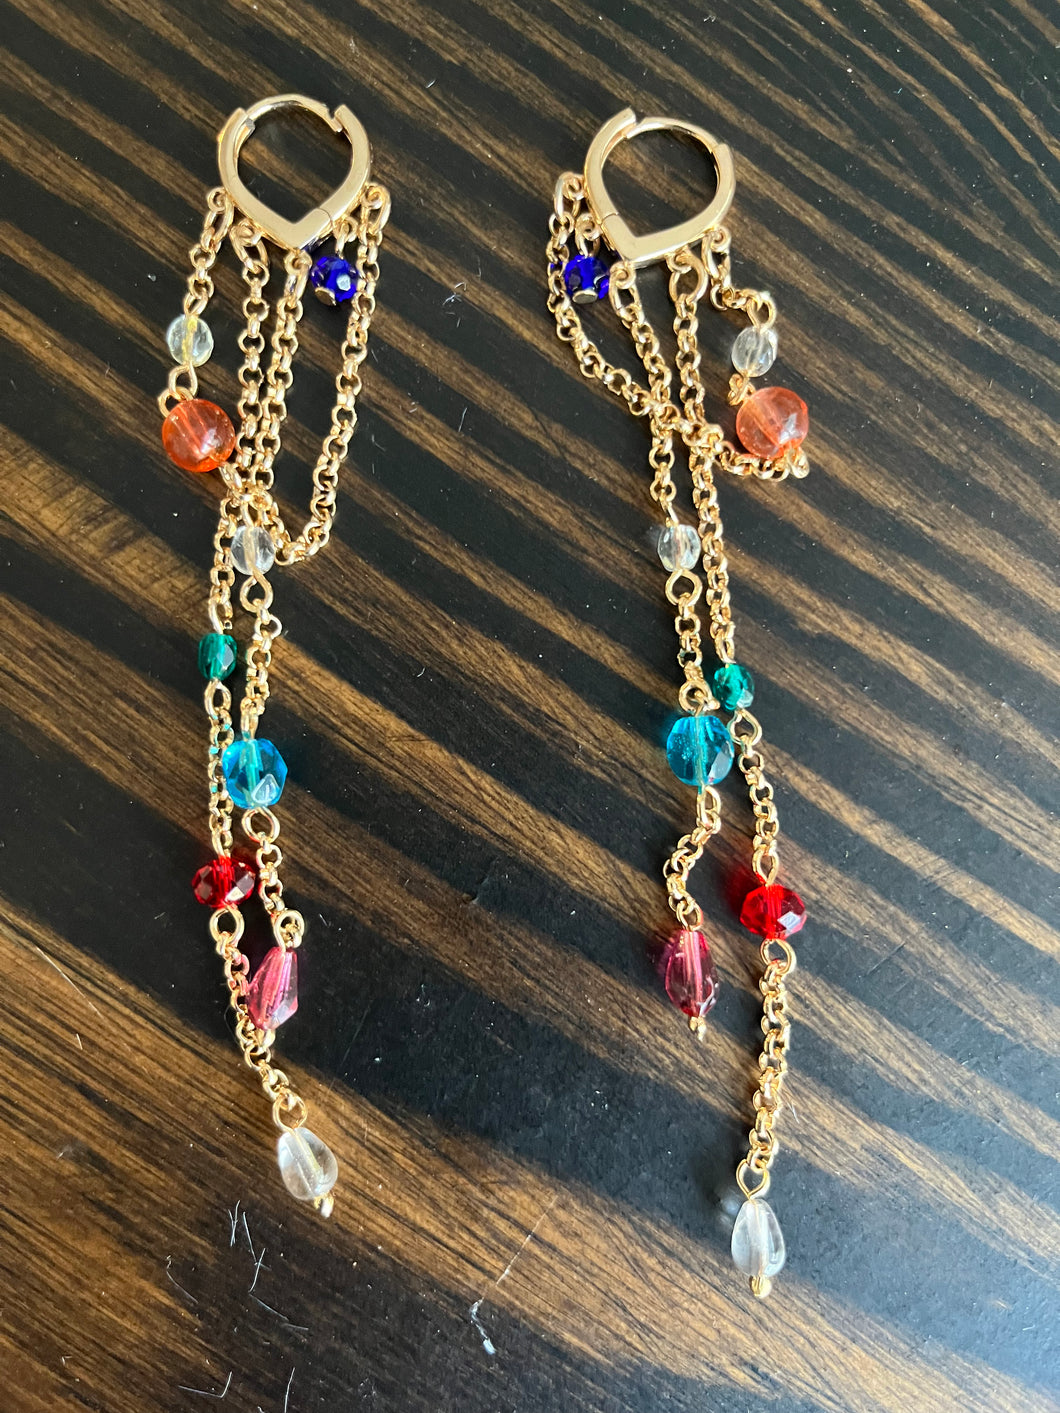 Jewel stone earrings